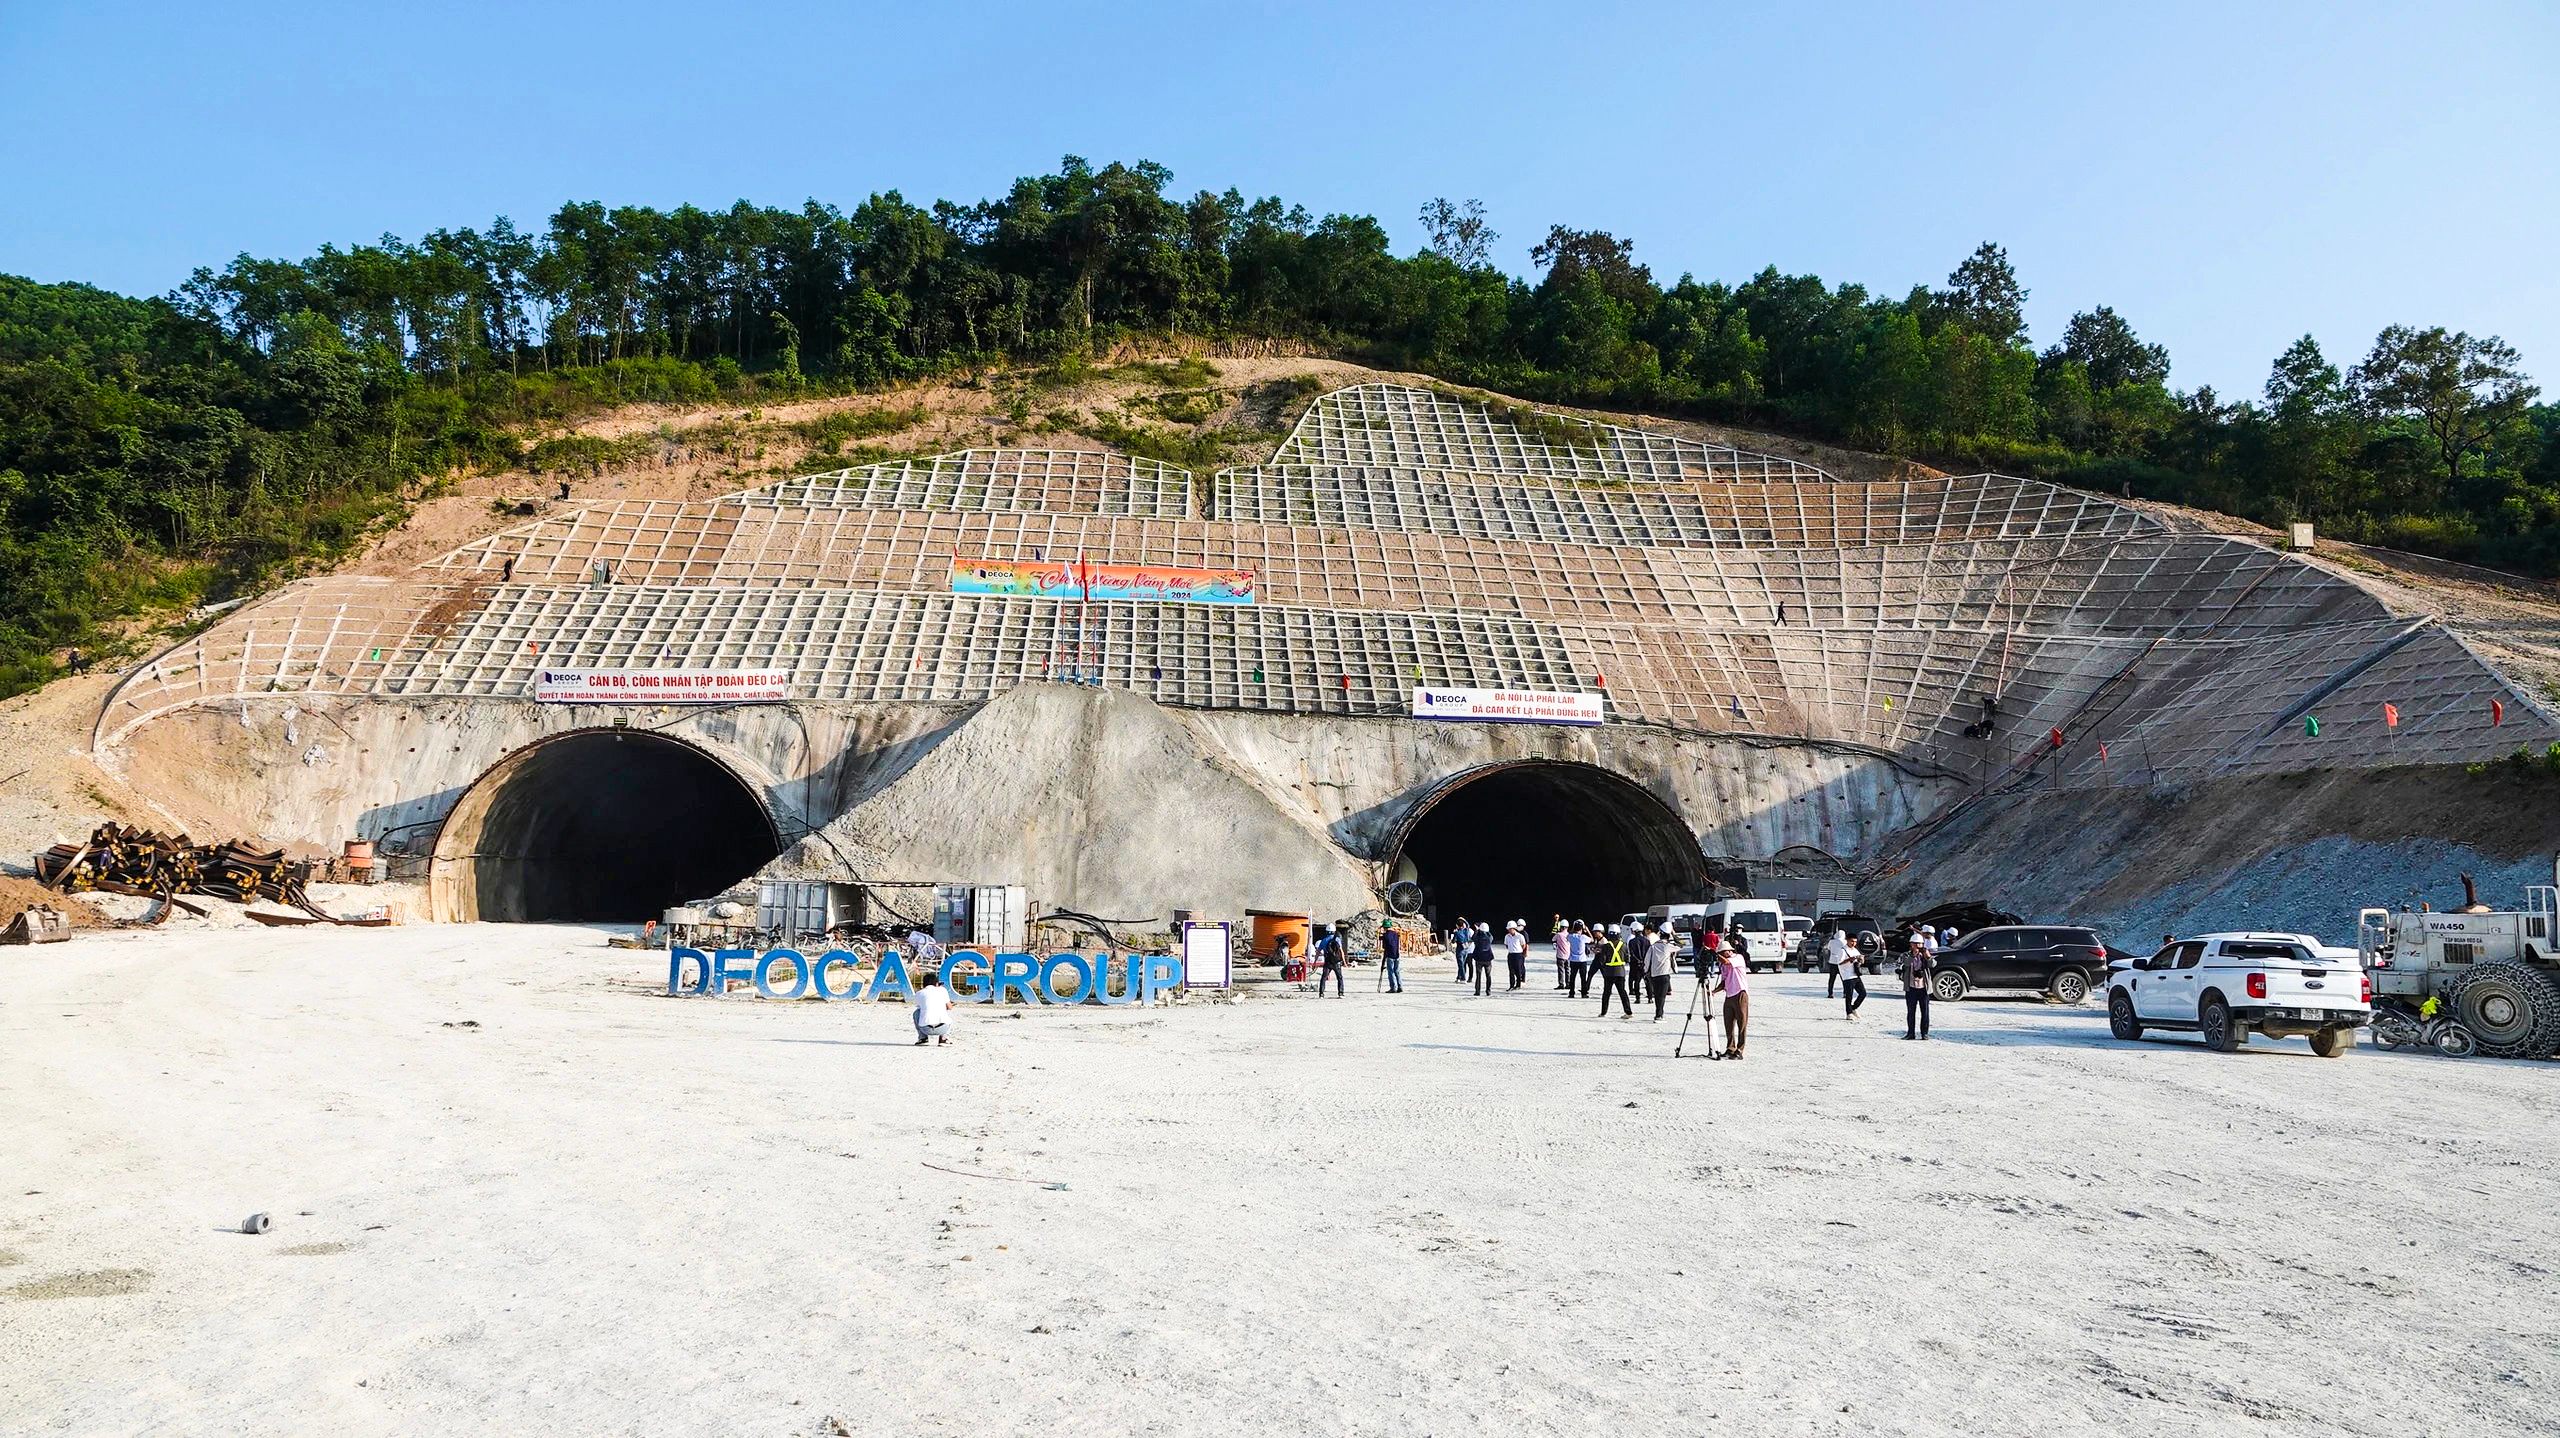 Trên tuyến cao tốc Quảng Ngãi - Hoài Nhơn có 3 hầm xuyên núi, gồm: hầm 1 dài 610m, hầm 2 dài 698m và hầm 3 dài 3.200m, cùng 77 cầu, 586 cống, 81 hầm chui dân sinh. Hầm số 3 là hầm xuyên núi lớn nhất trên tuyến cao tốc Bắc - Nam được xây mới, kết nối hai tỉnh Quảng Ngãi với Bình Định